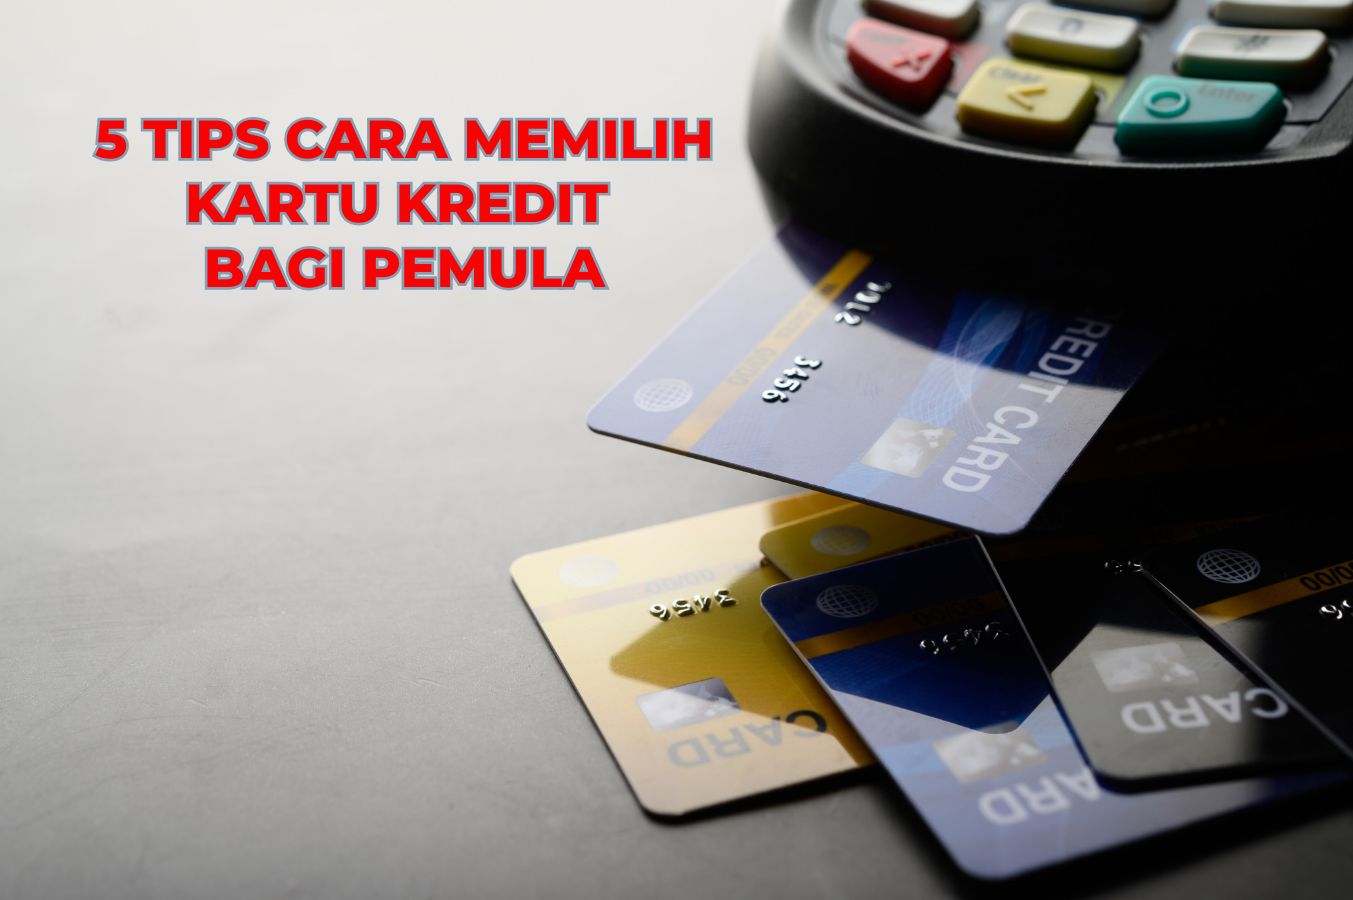 Mau Punya Kartu Kredit? Jangan Lupa Ikuti 5 Cara Memilih Kartu Kredit Bagi Pemula